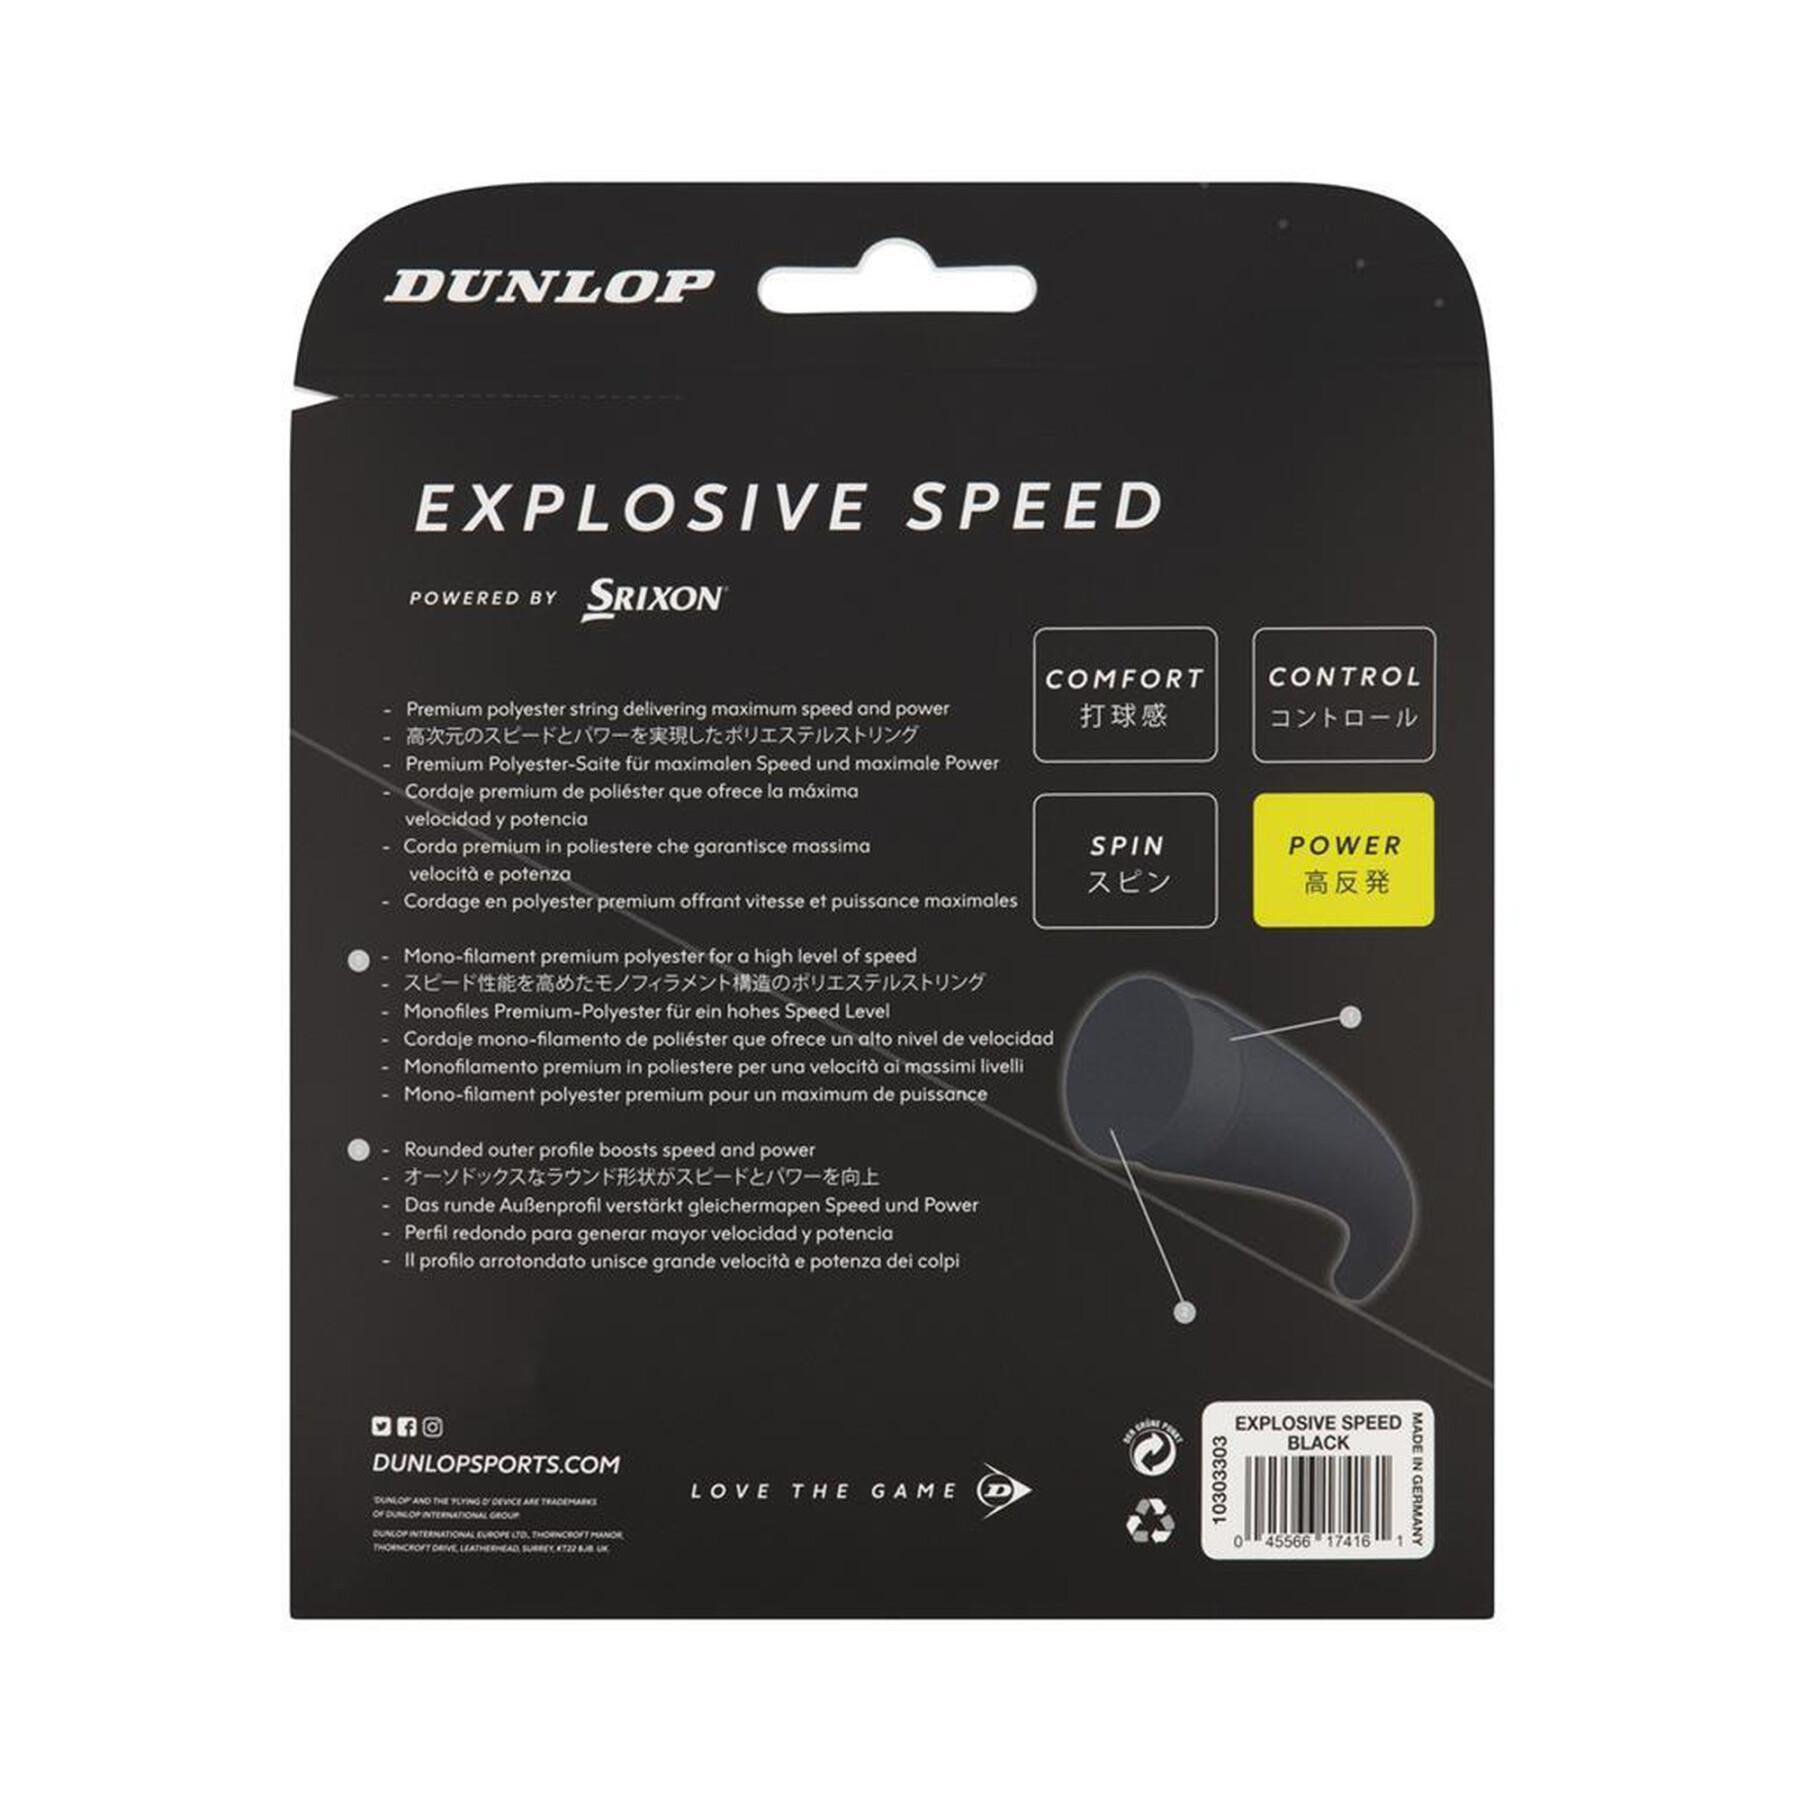 Seil Dunlop explosive speed